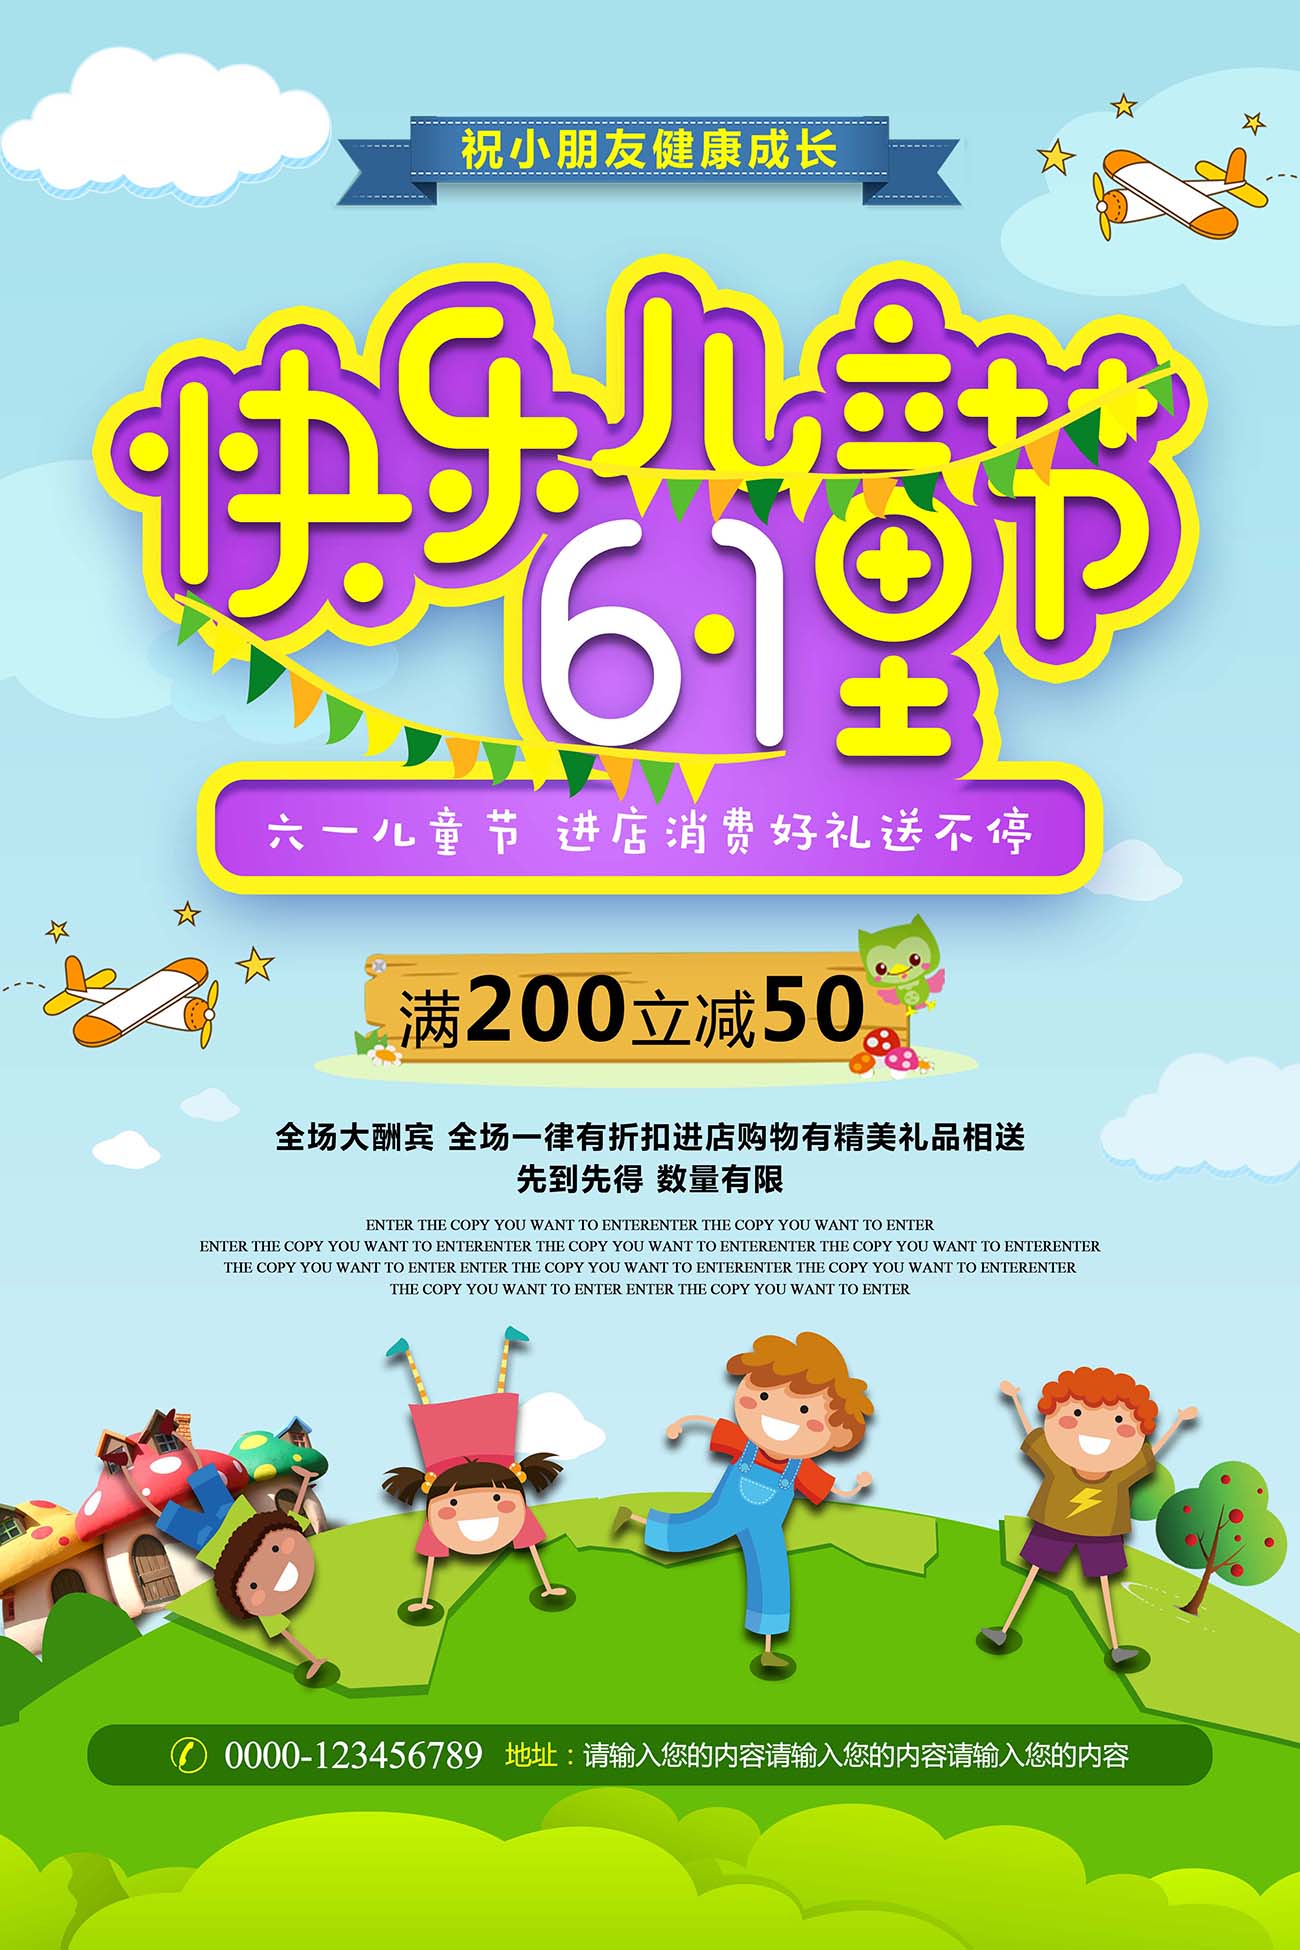 61六一快乐儿童节促销送礼海报设计PSD源文件